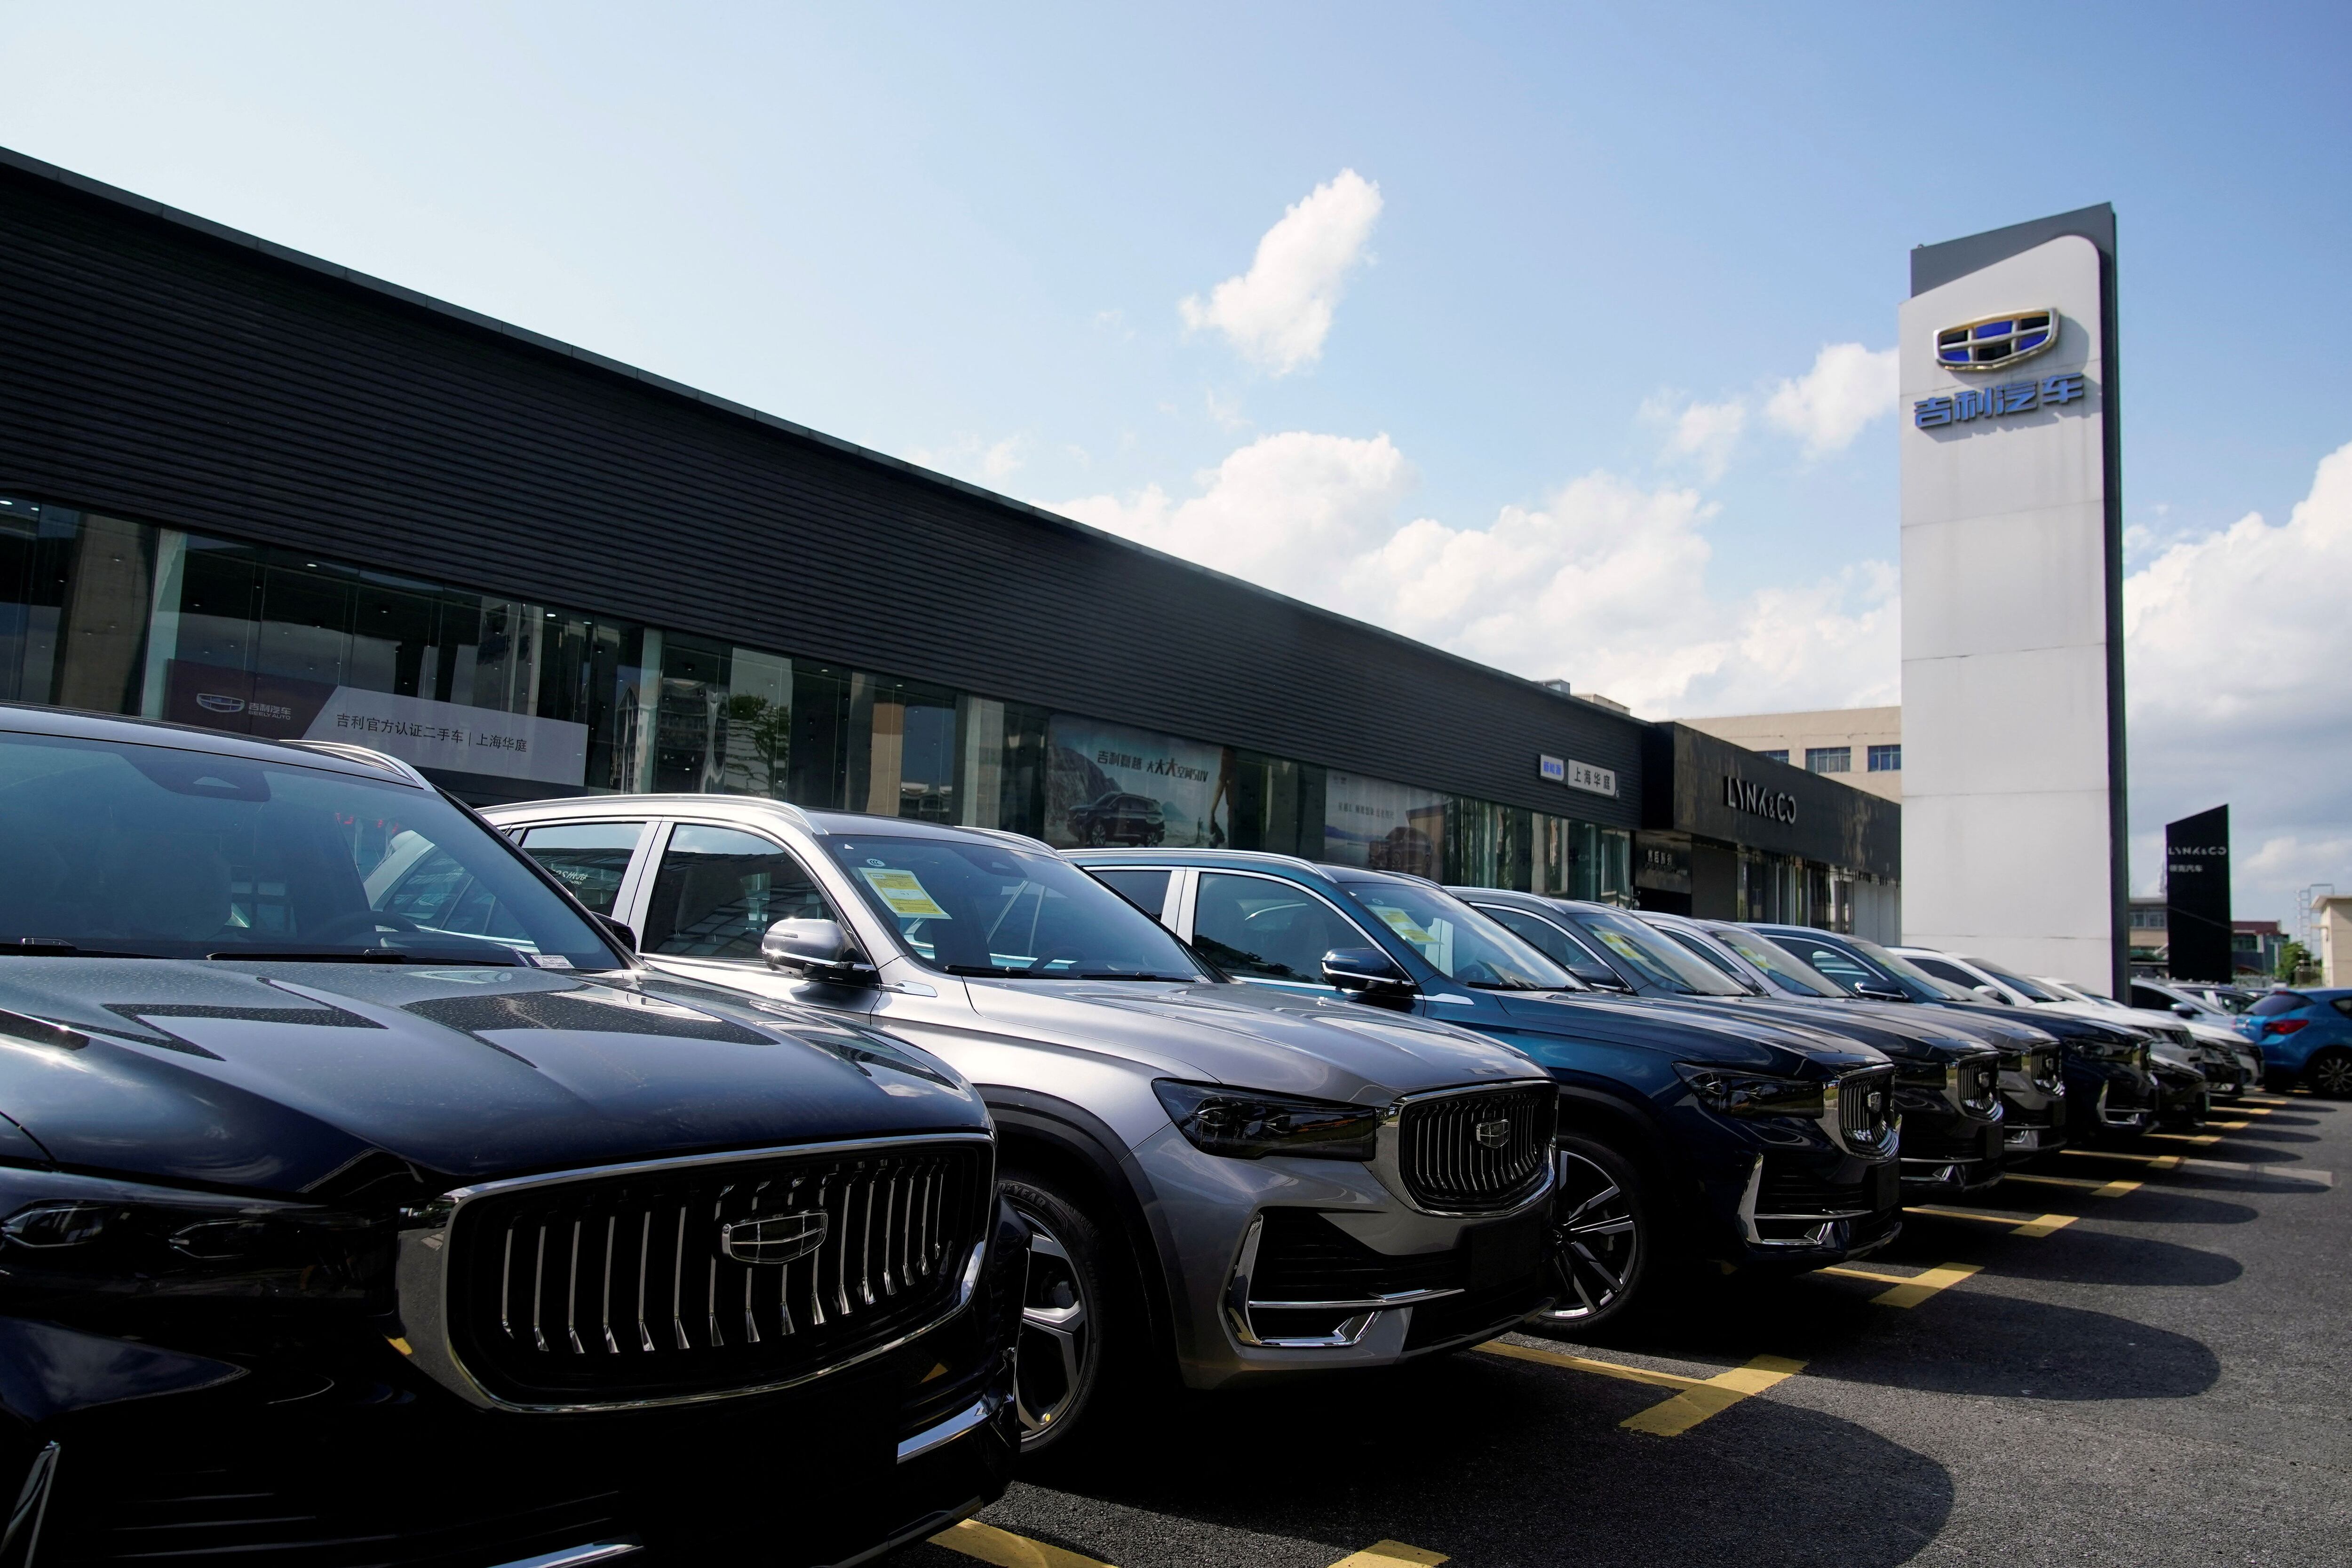 Geely Motors es un símbolo del crecimiento de la industria automotriz china. Comprar Volvo le permitió subir en la consideración mundial como un fabricante de alta calidad. REUTERS/Aly Song/File Photo